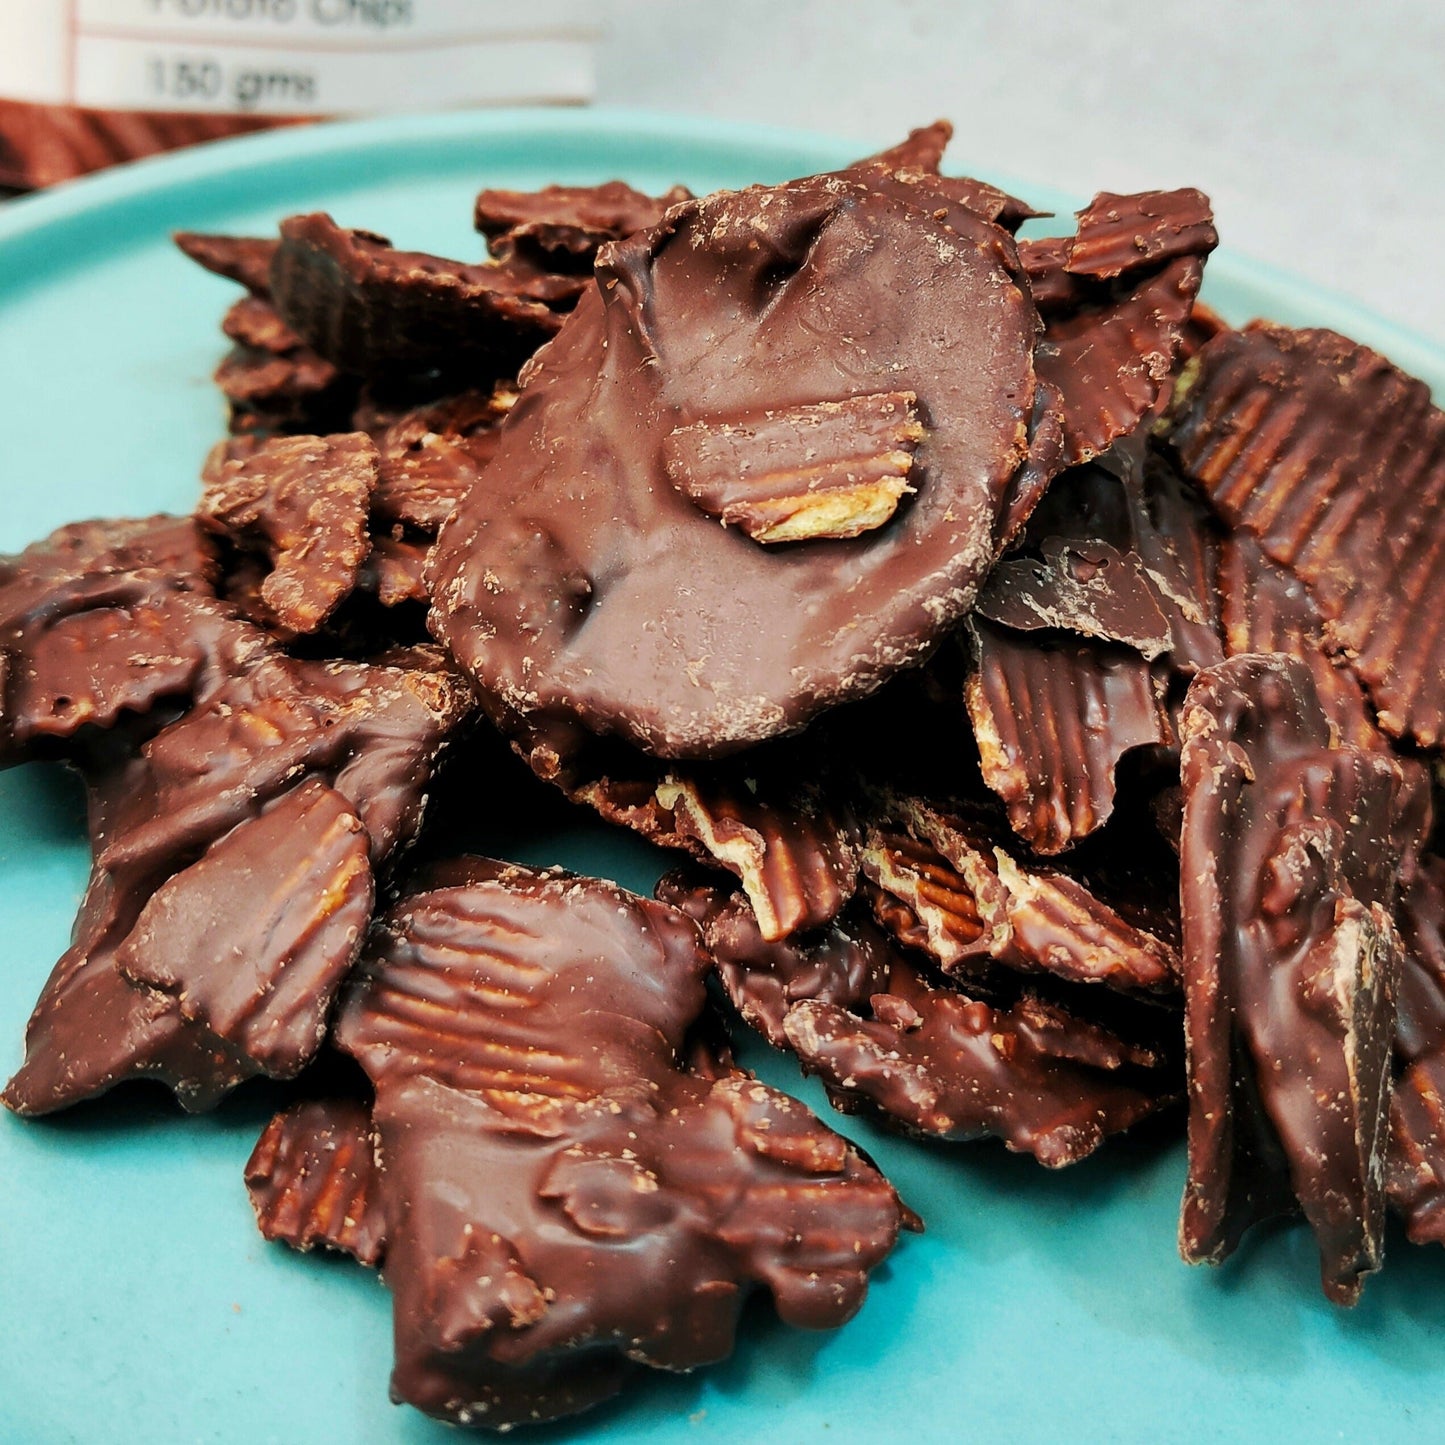 55% Dark Chocolate coated Potato Chips